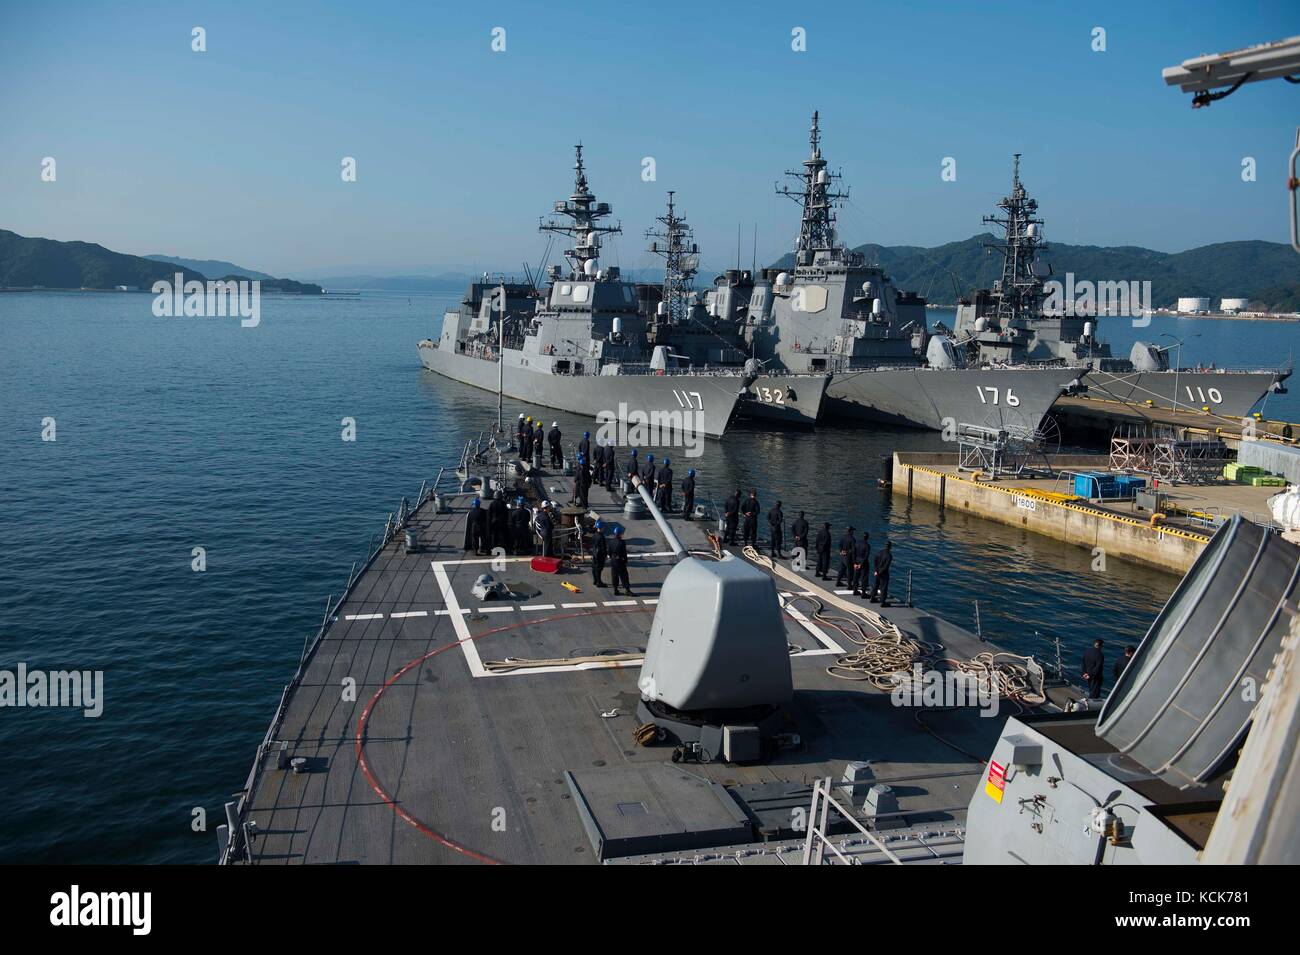 La marina degli Stati Uniti arleigh burke-class guidato-missile destroyer USS John s. mccain partono le attività della flotta sasebo per evitare il ciclone tropicale noru agosto 3, 2017 a Sasebo, Giappone. (Foto di mcs3 joshua mortensen via planetpix) Foto Stock